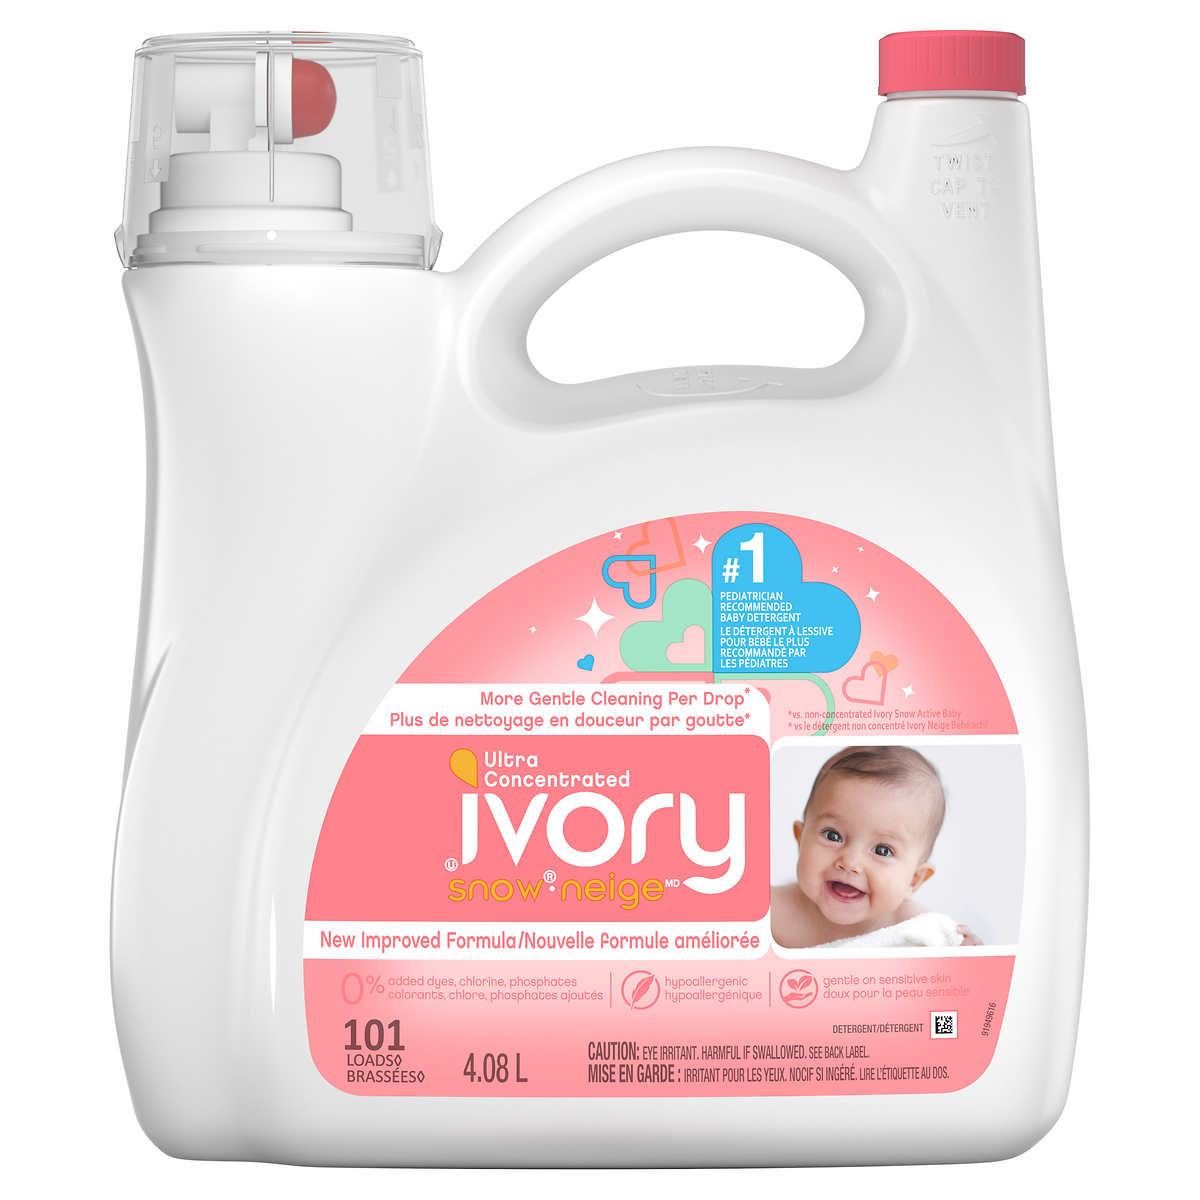 Ivory Neige Detergent A Lessive Liquide Pour Vetements De Bebe 101 Brassees 4 08 L Deliver Grocery Online Dg 9354 2793 Quebec Inc